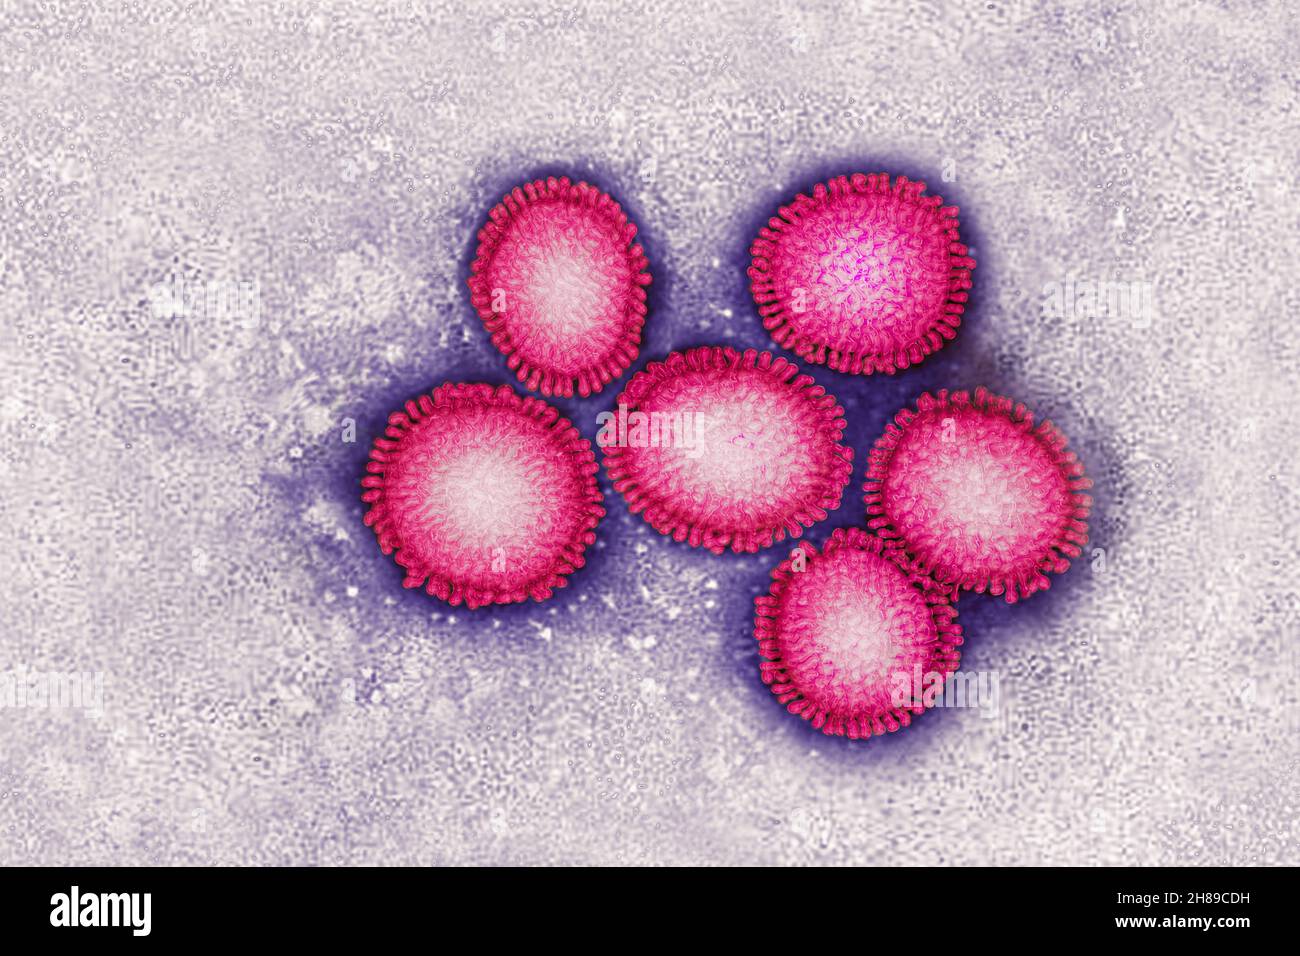 El virus de la influenza Foto de stock